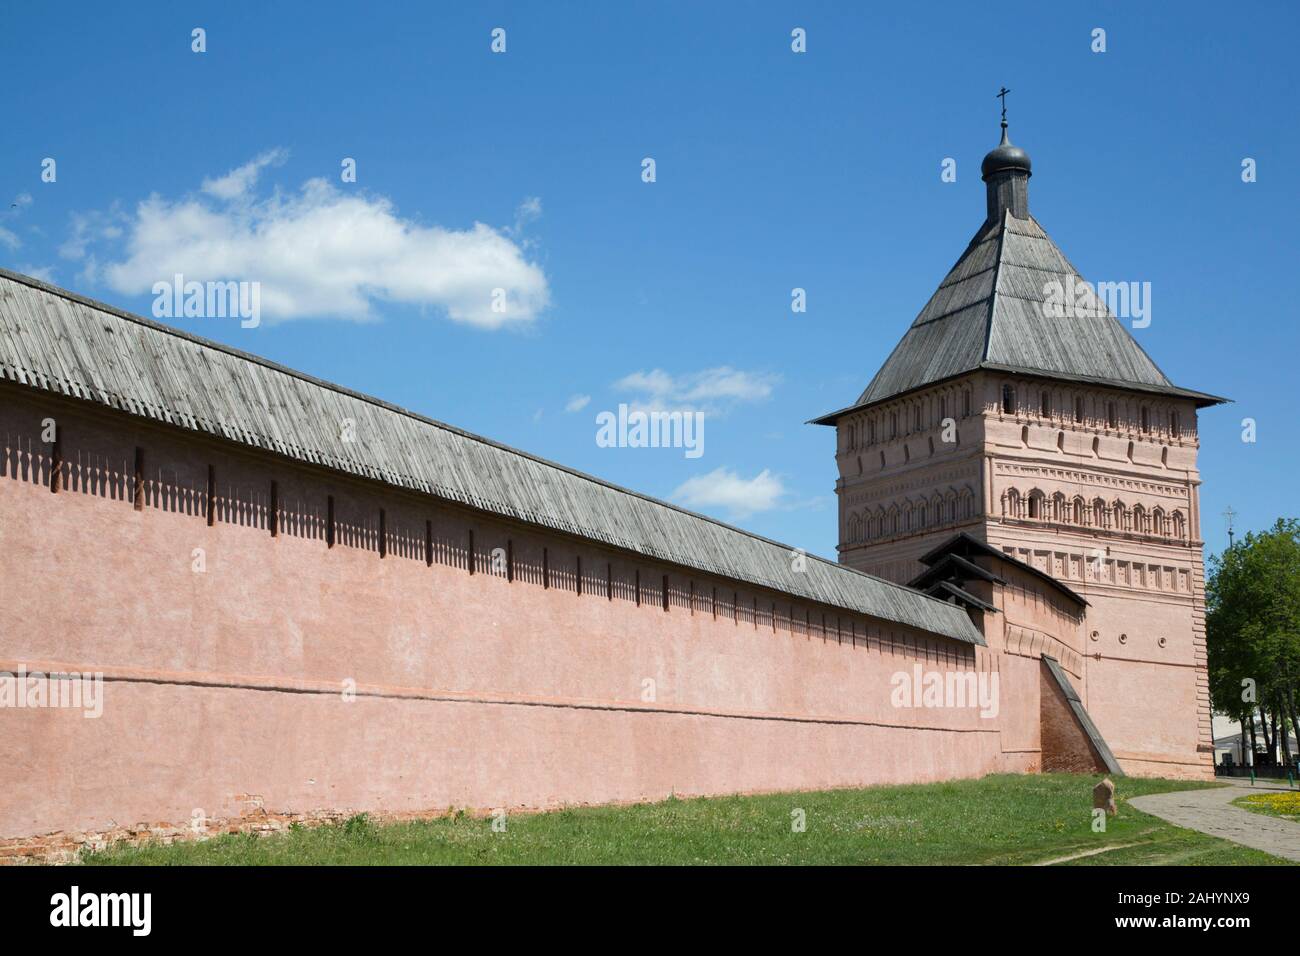 Terraplén muros y torres, el Monasterio de San Salvador Euthymius, Sitio del Patrimonio Mundial de la UNESCO, Suzdal, Vladimir Oblast, Rusia Foto de stock